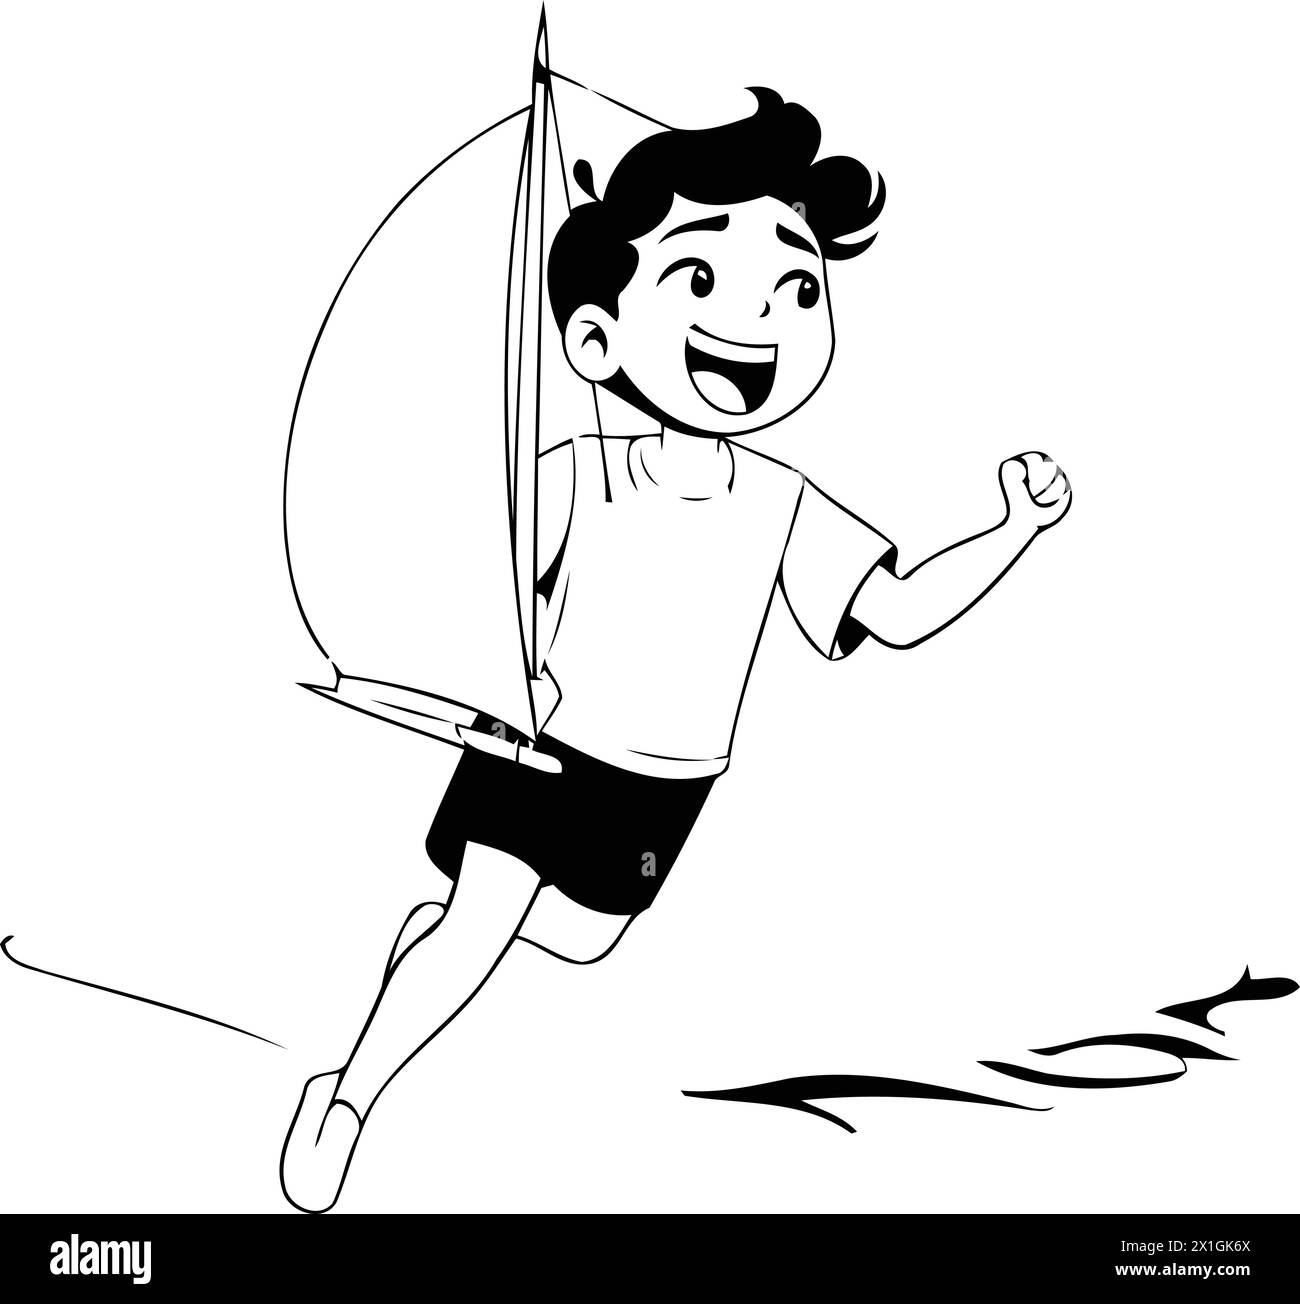 Happy boy jumping from windsurf board. Vector cartoon illustration. Stock Vector